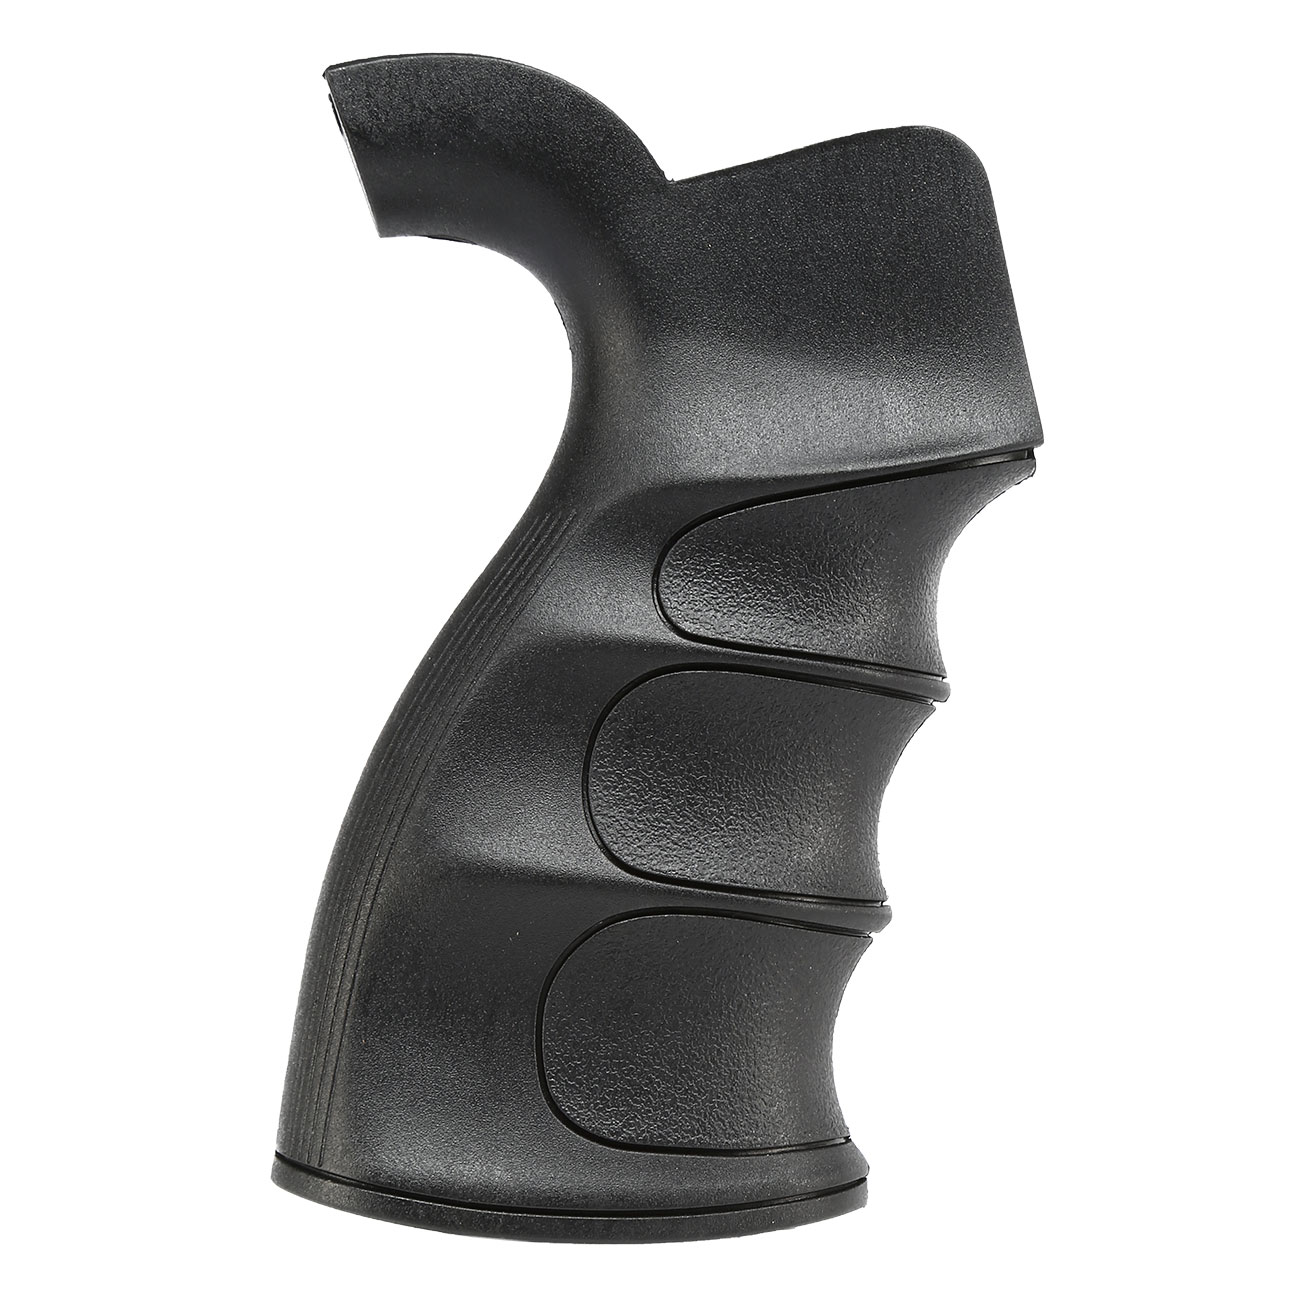 Element M4 / M16 G27-Style Pistol Grip Griffstück schwarz Bild 1